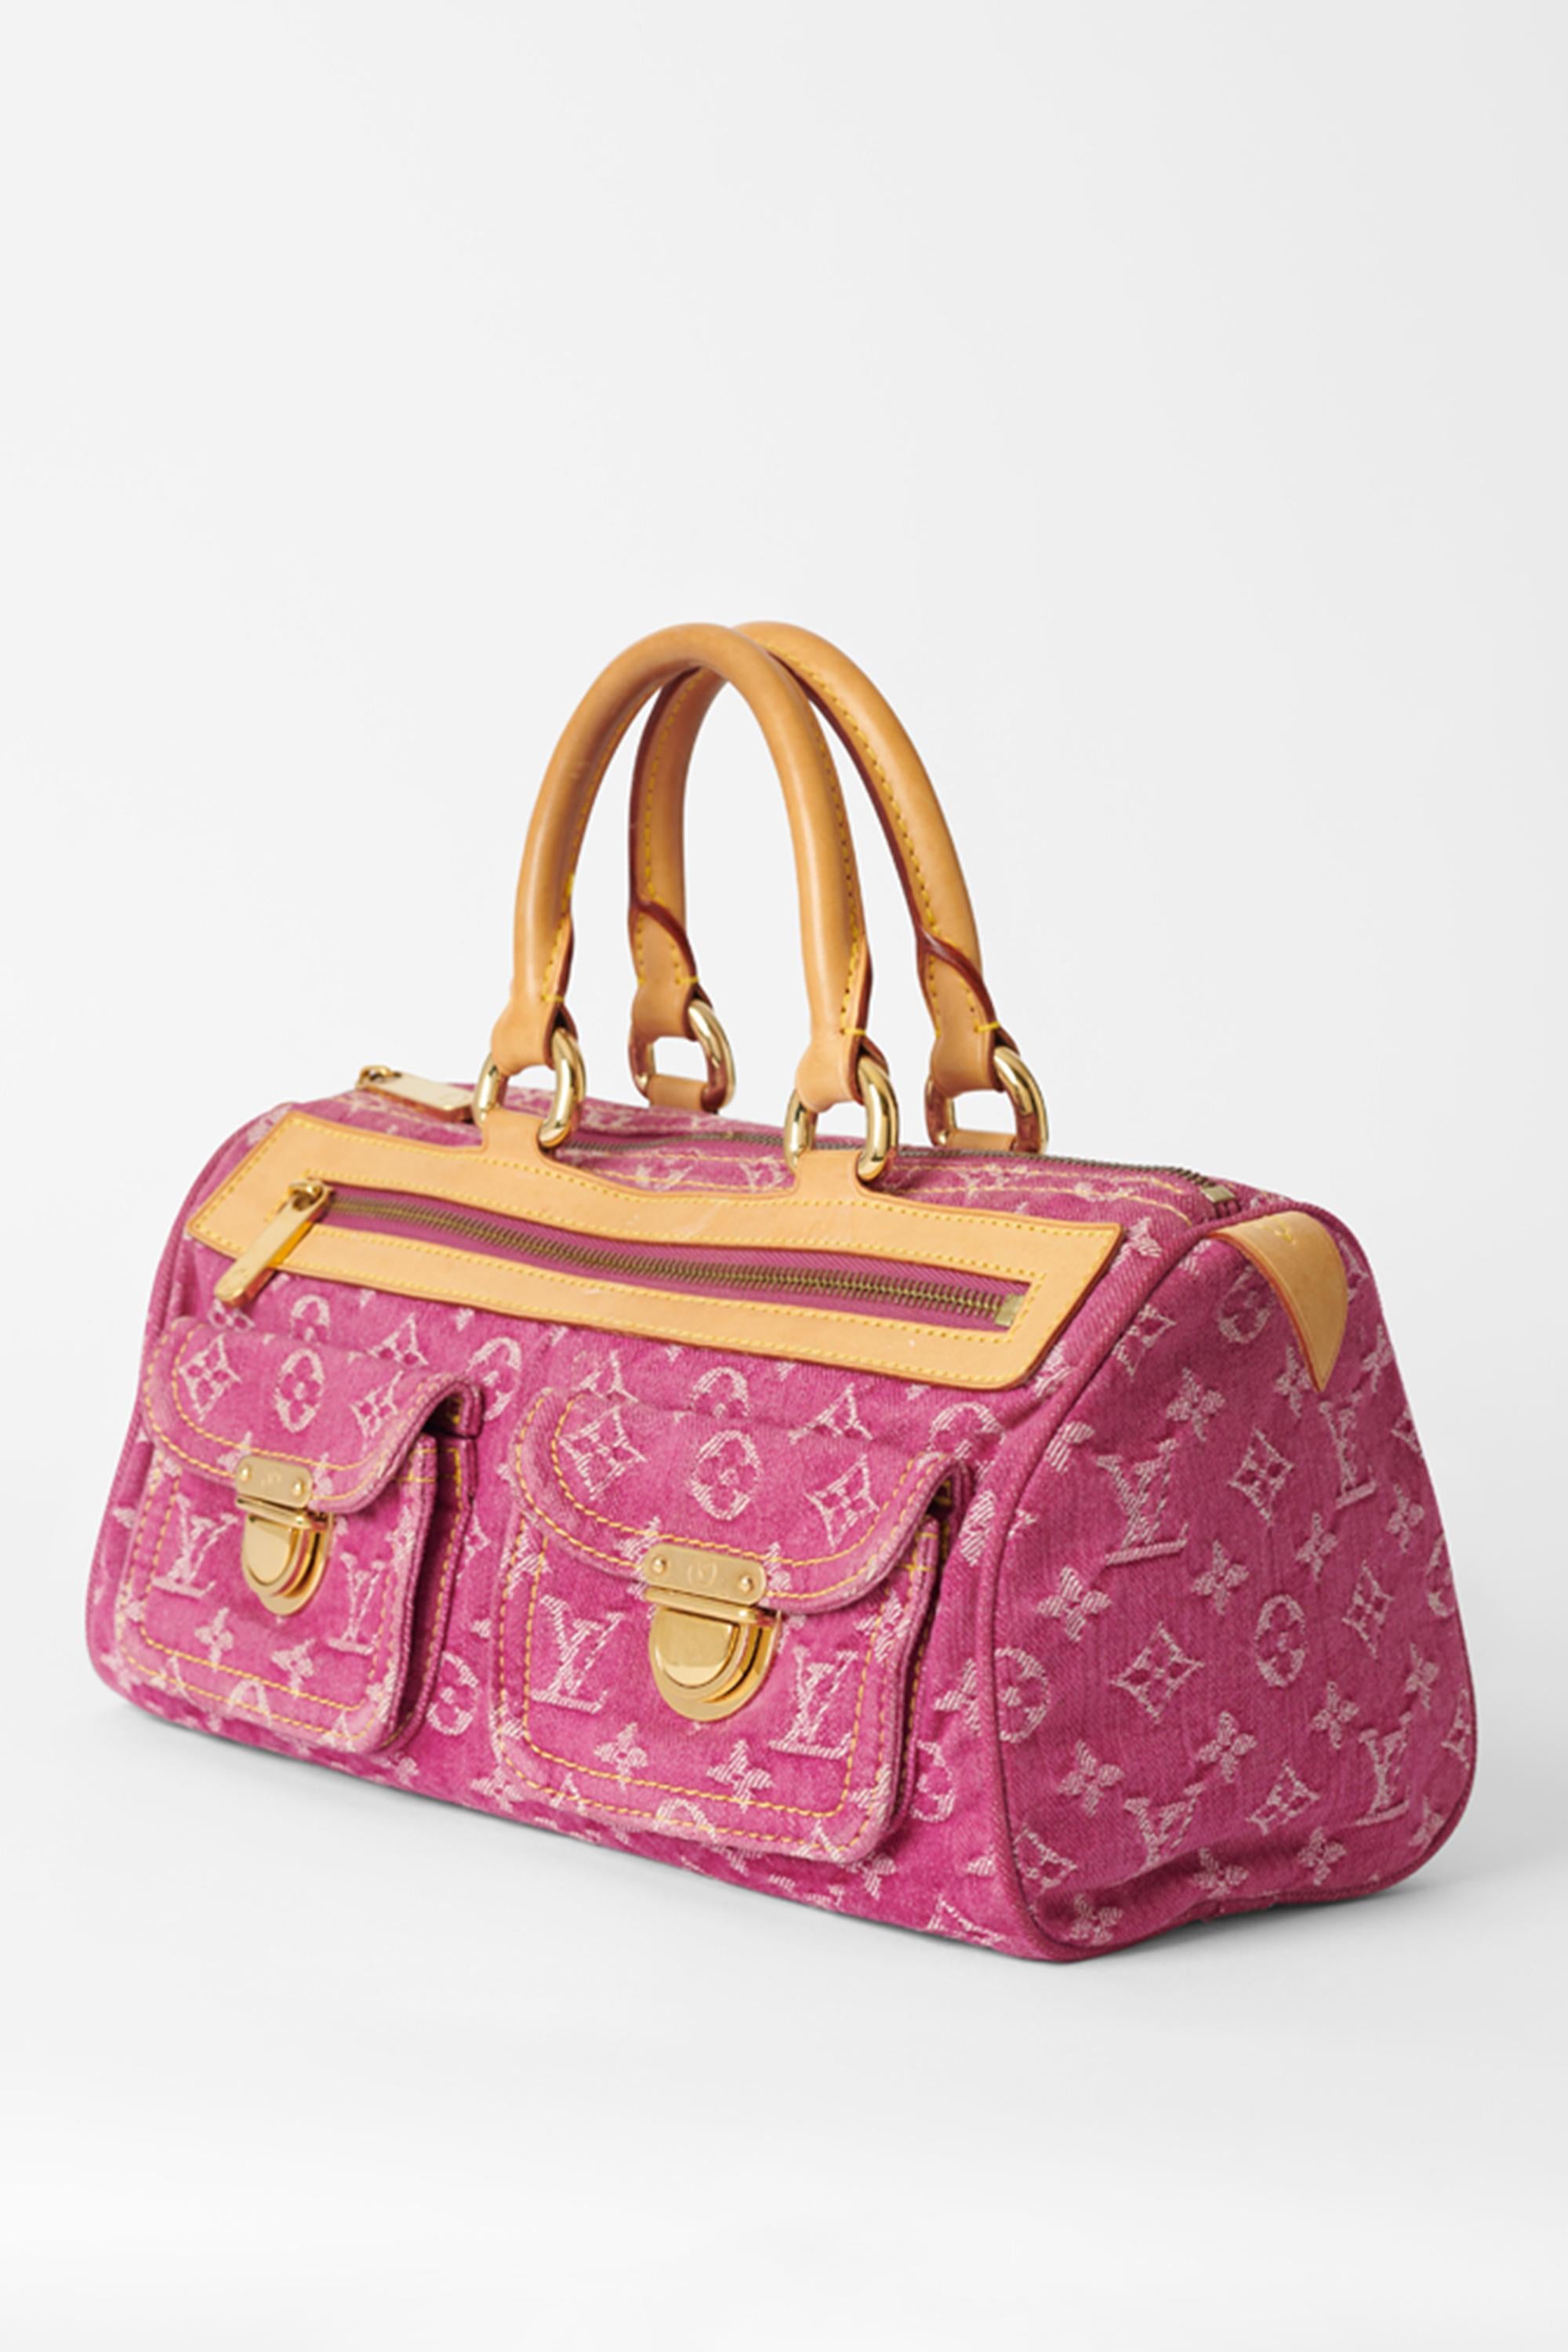 Nous avons le plaisir de vous présenter ce sac speedy en denim rose Louis Vuitton 2006 avec son écharpe assortie. Il est doté d'un monogramme, d'une double poche frontale avec fermeture LV, d'une poche frontale zippée et d'un compartiment principal